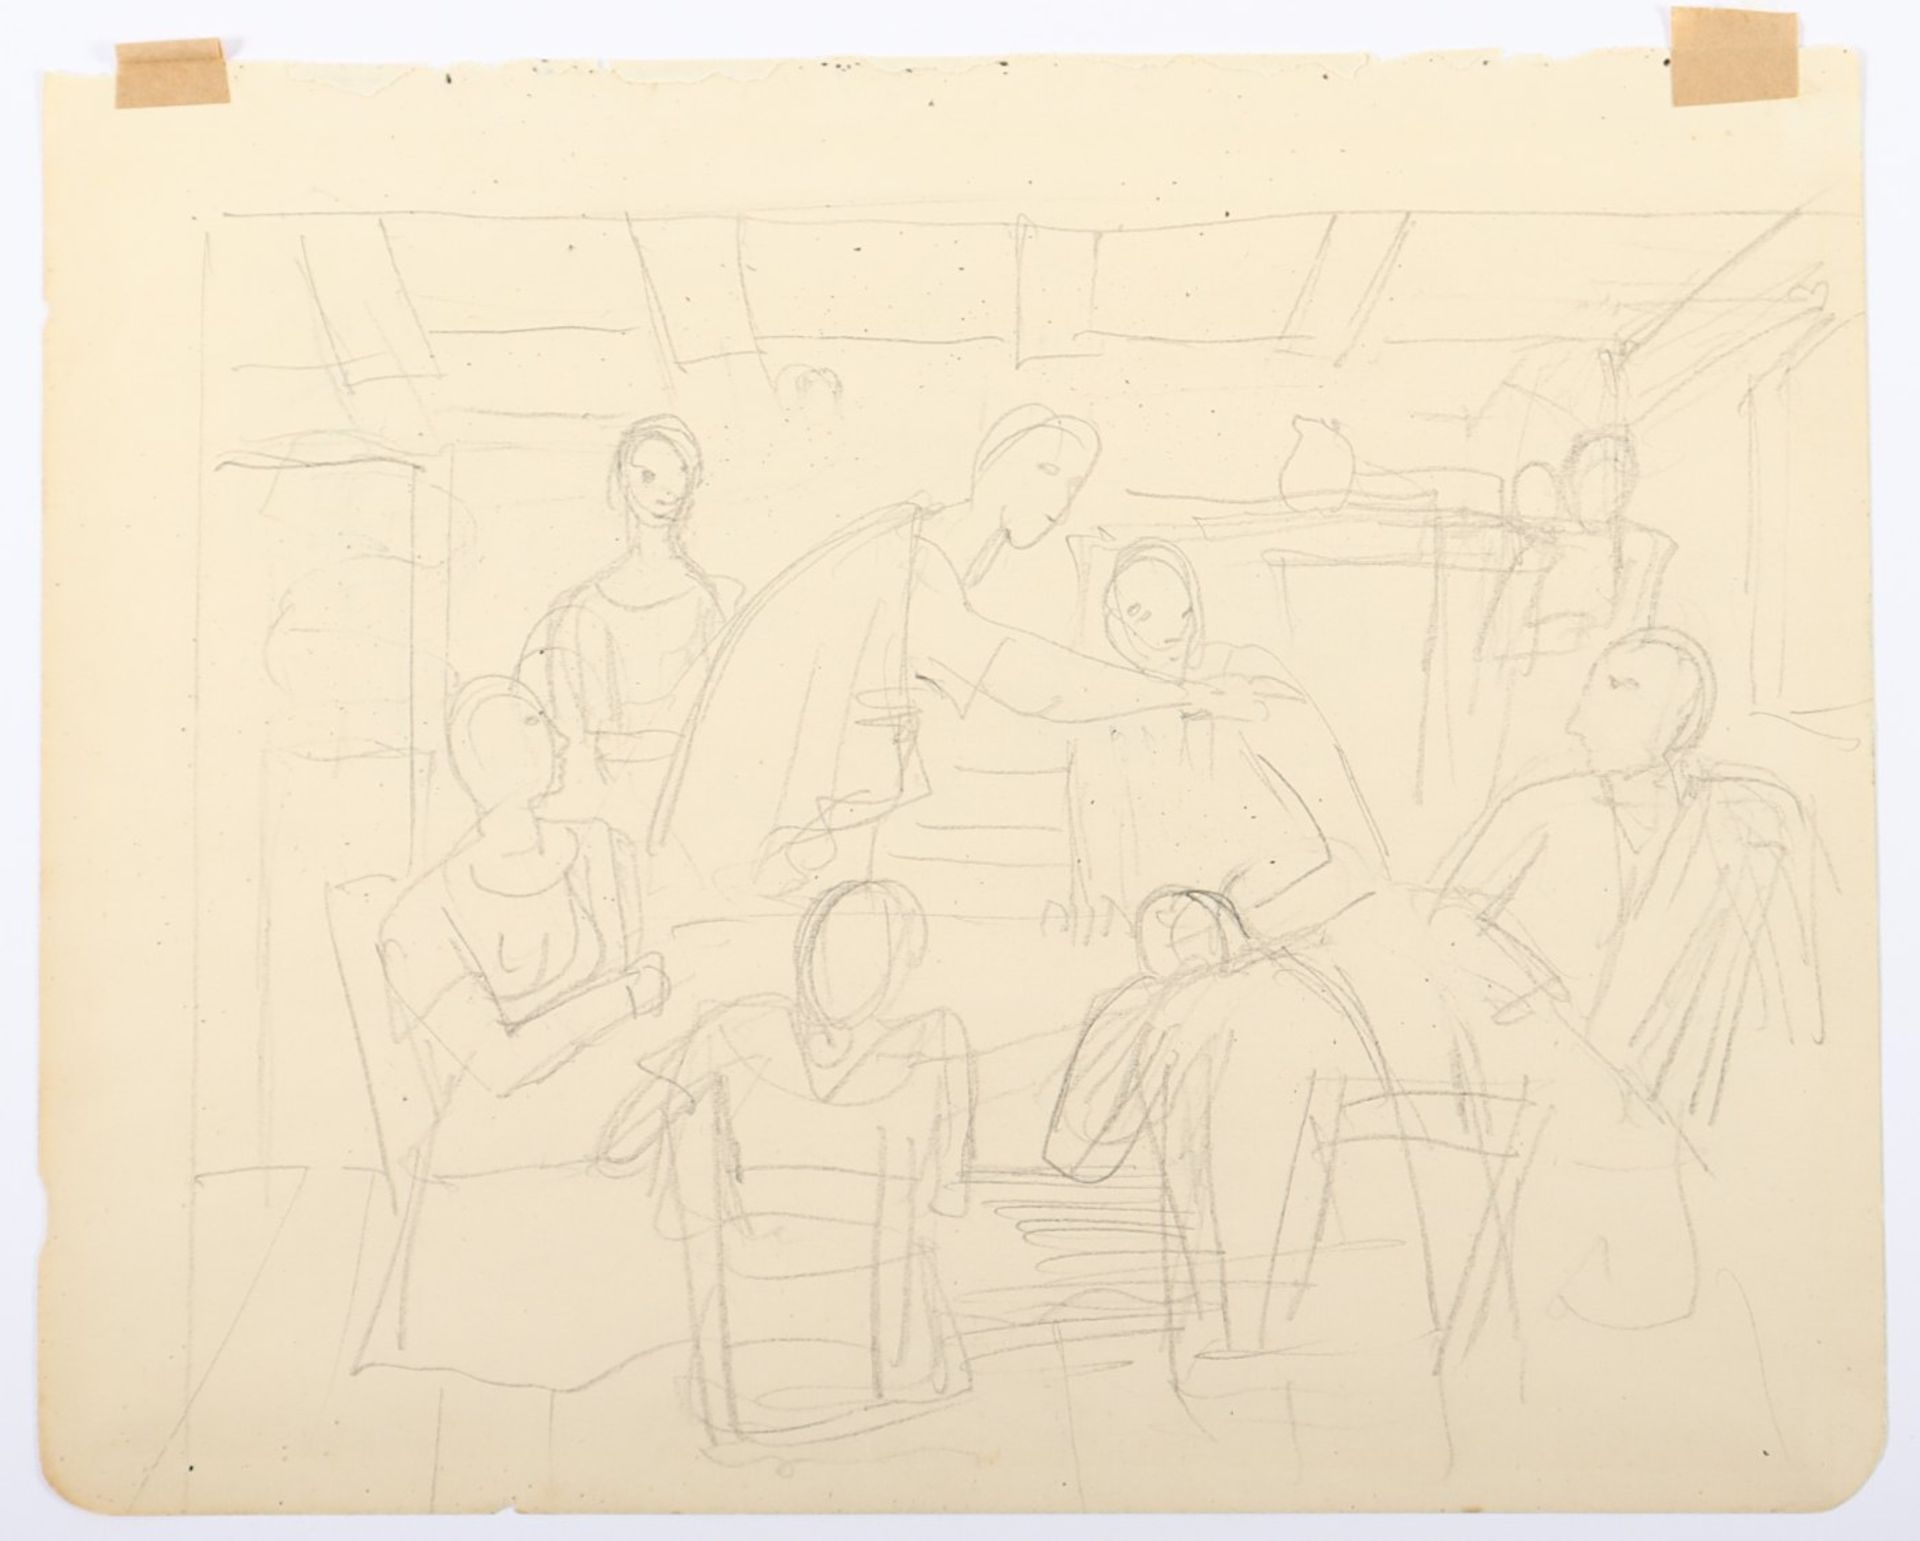 HOFER, Carl, "Interieurszene", Bleistift/Papier, 17 x 21, aus einem Zeichenbuch, ungerahmt